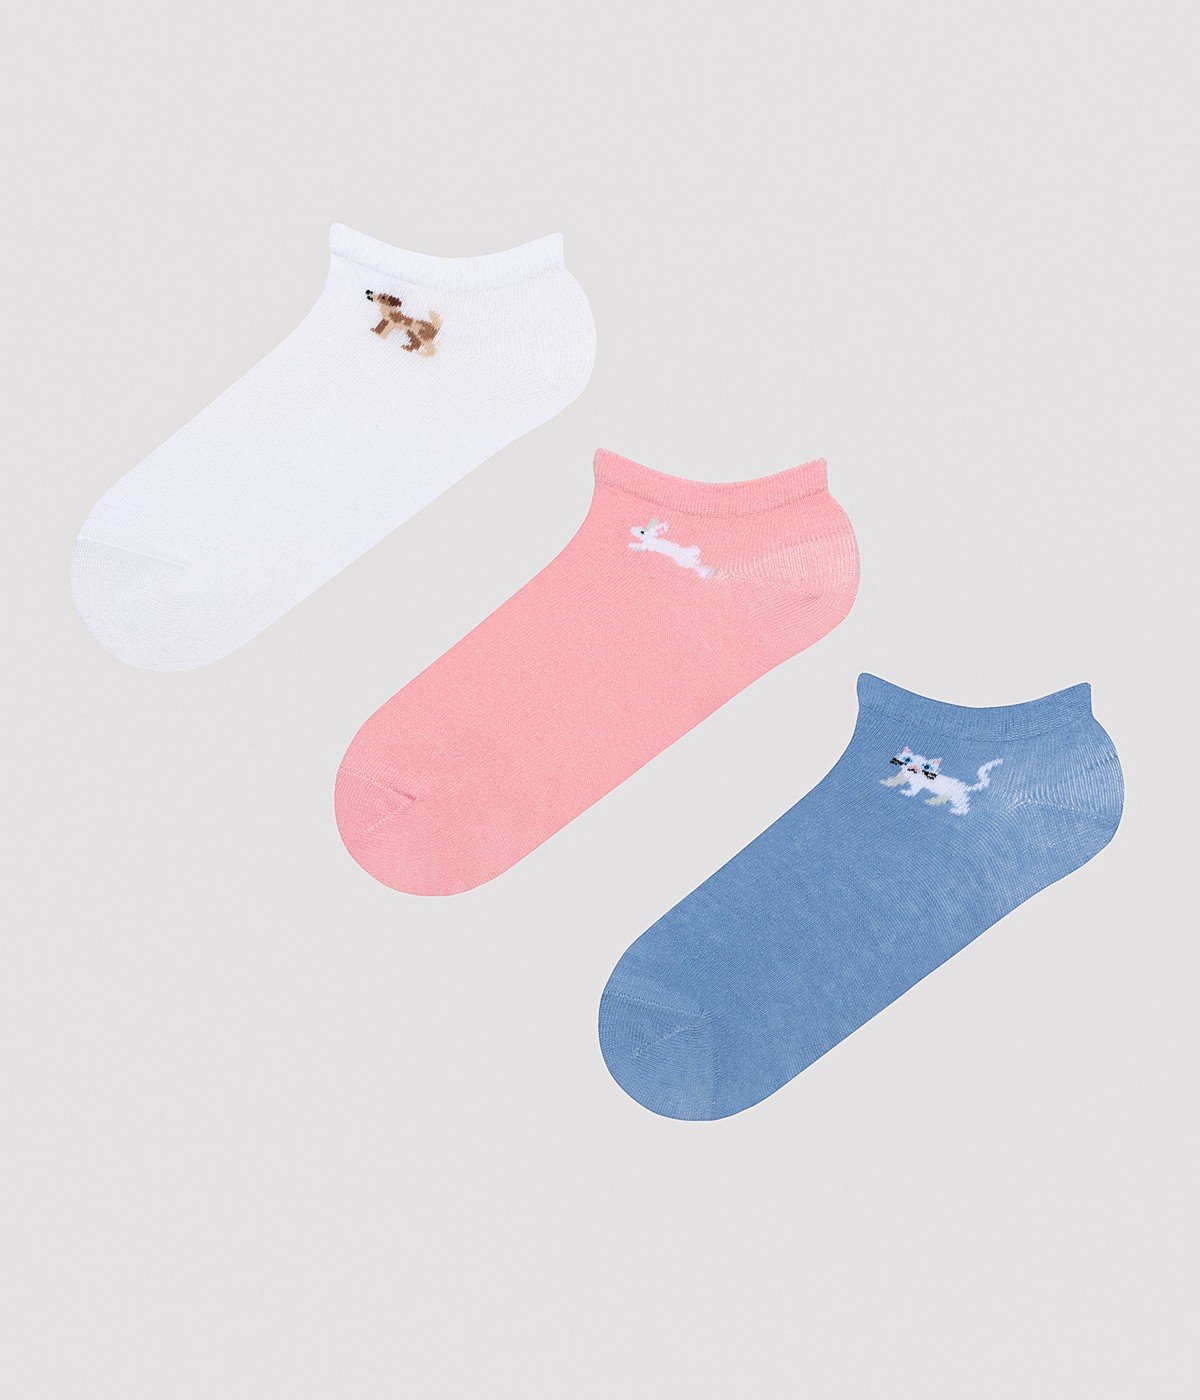 Minimal Animal 3in1 Liner Socks